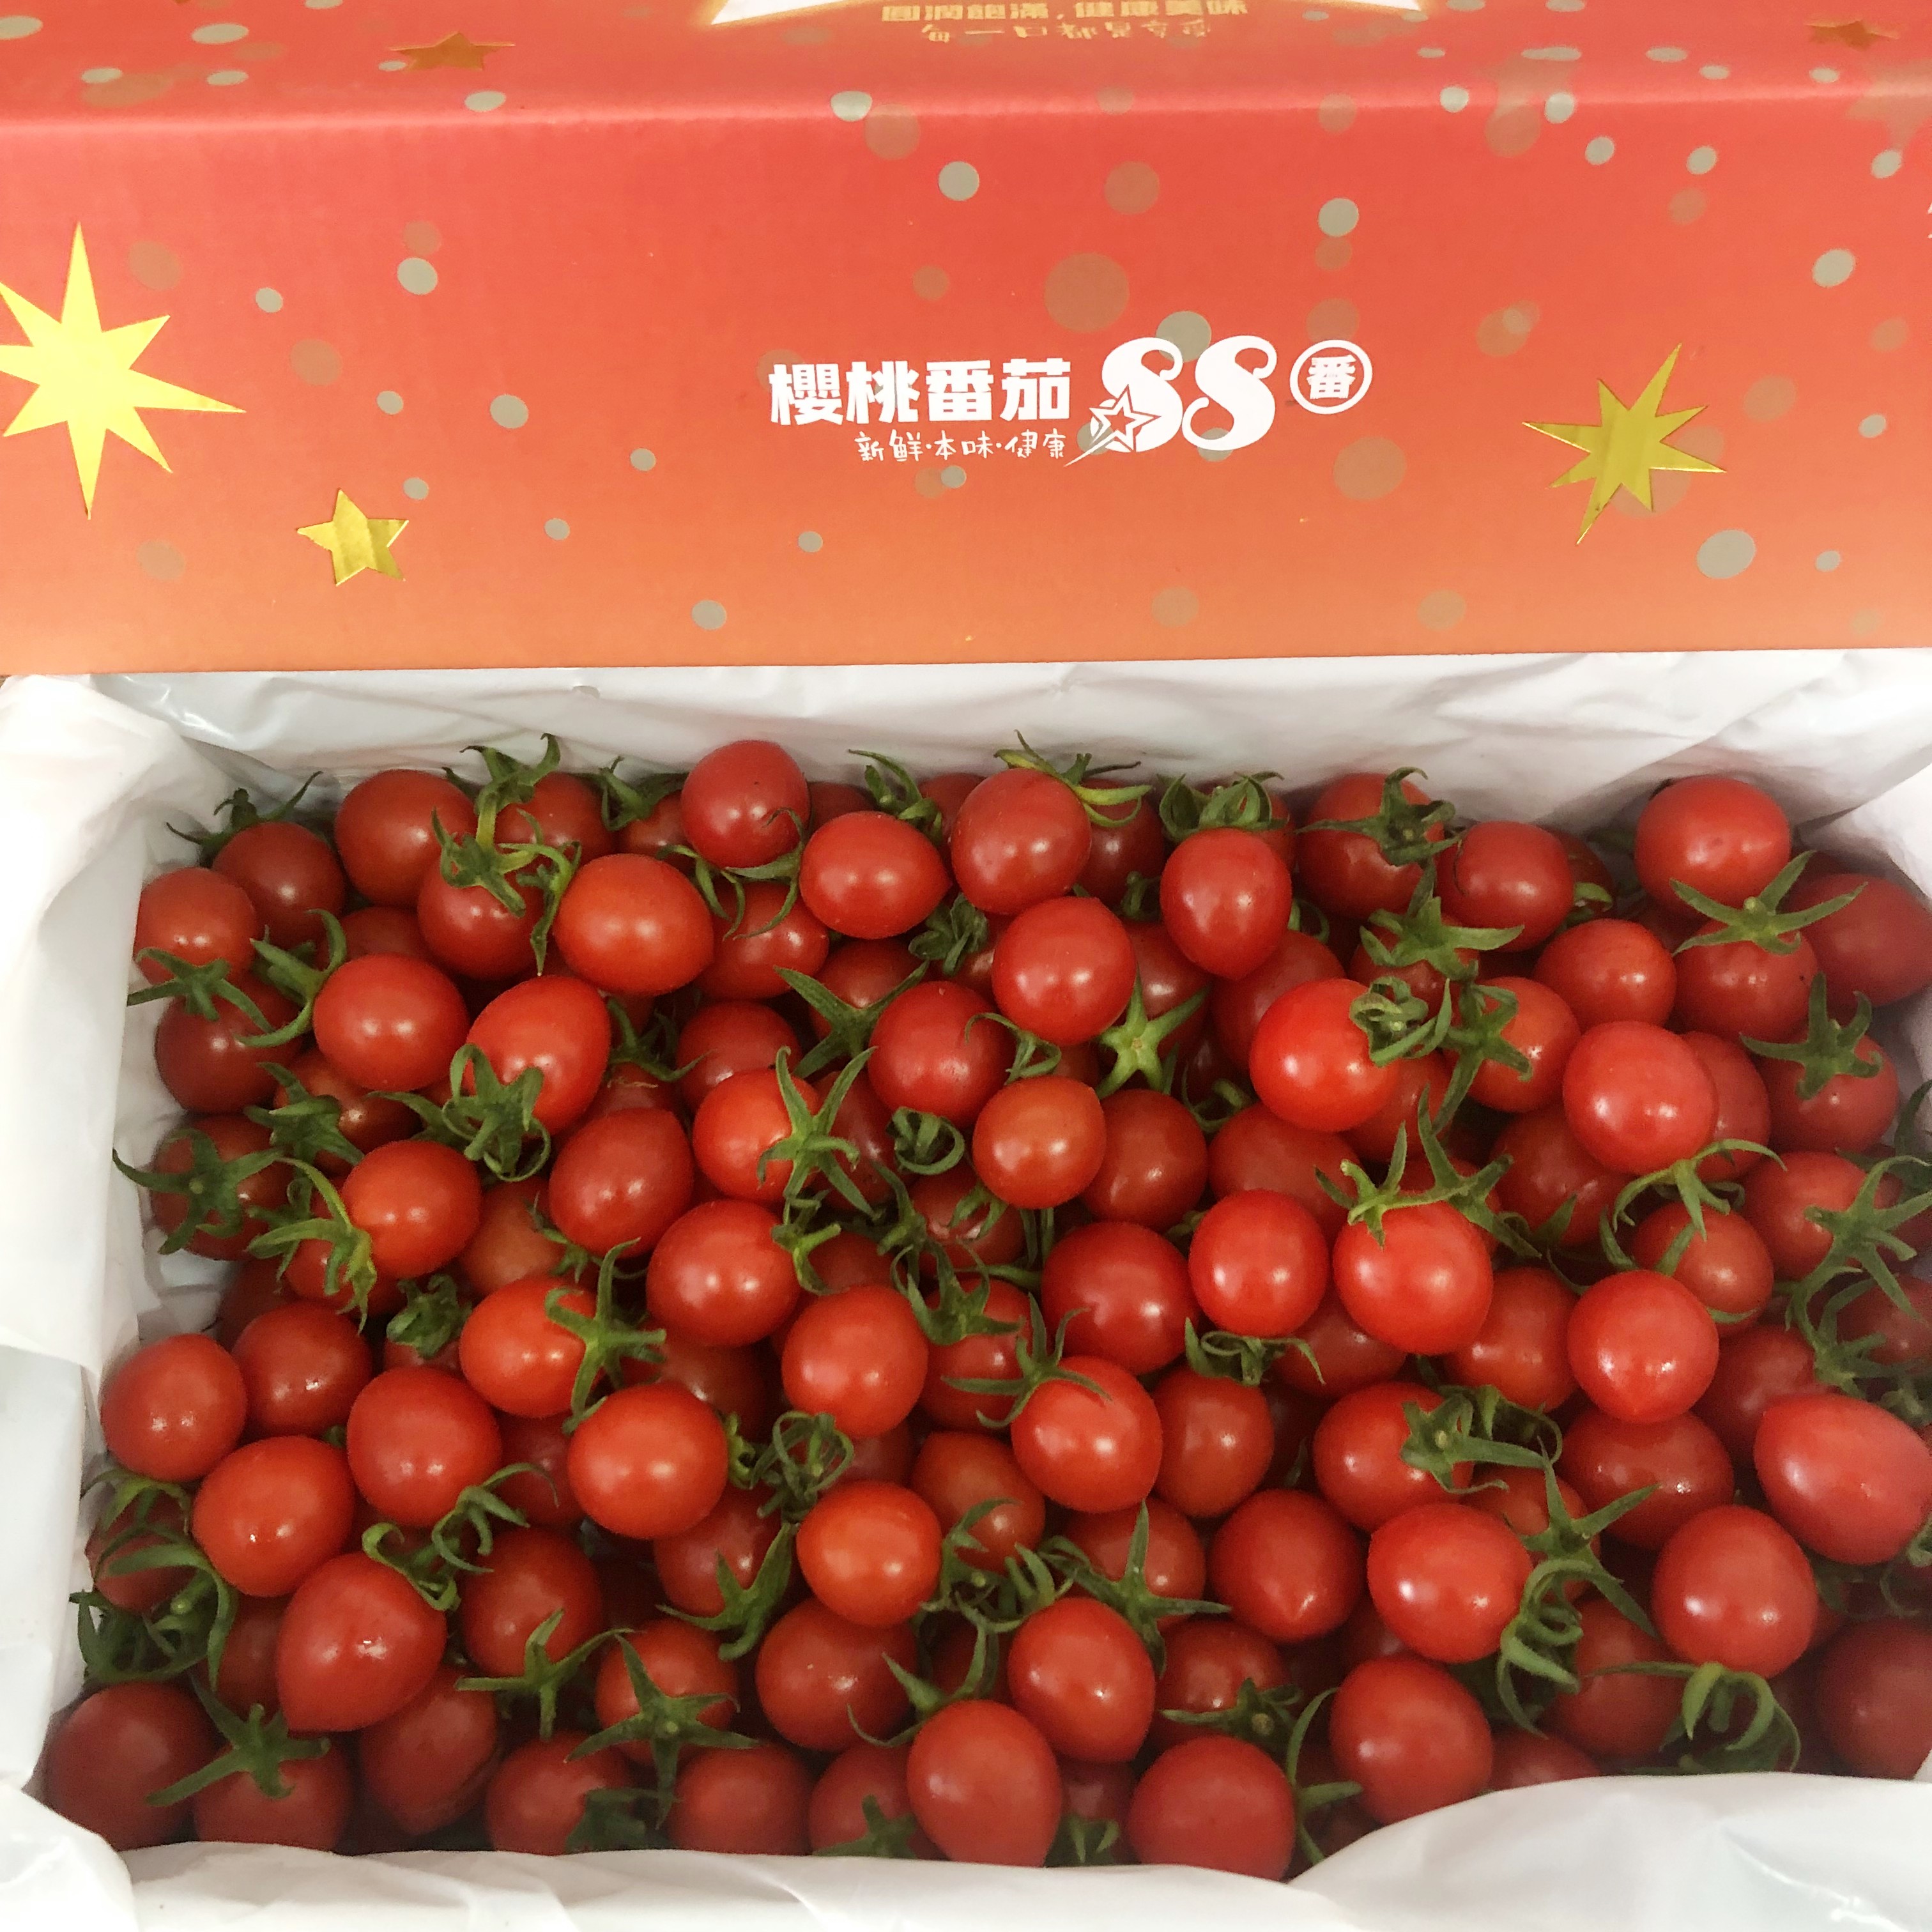 现货釜山88小蕃茄玲珑千禧果圣女果3斤礼盒装当季新鲜孕妇水果-图0